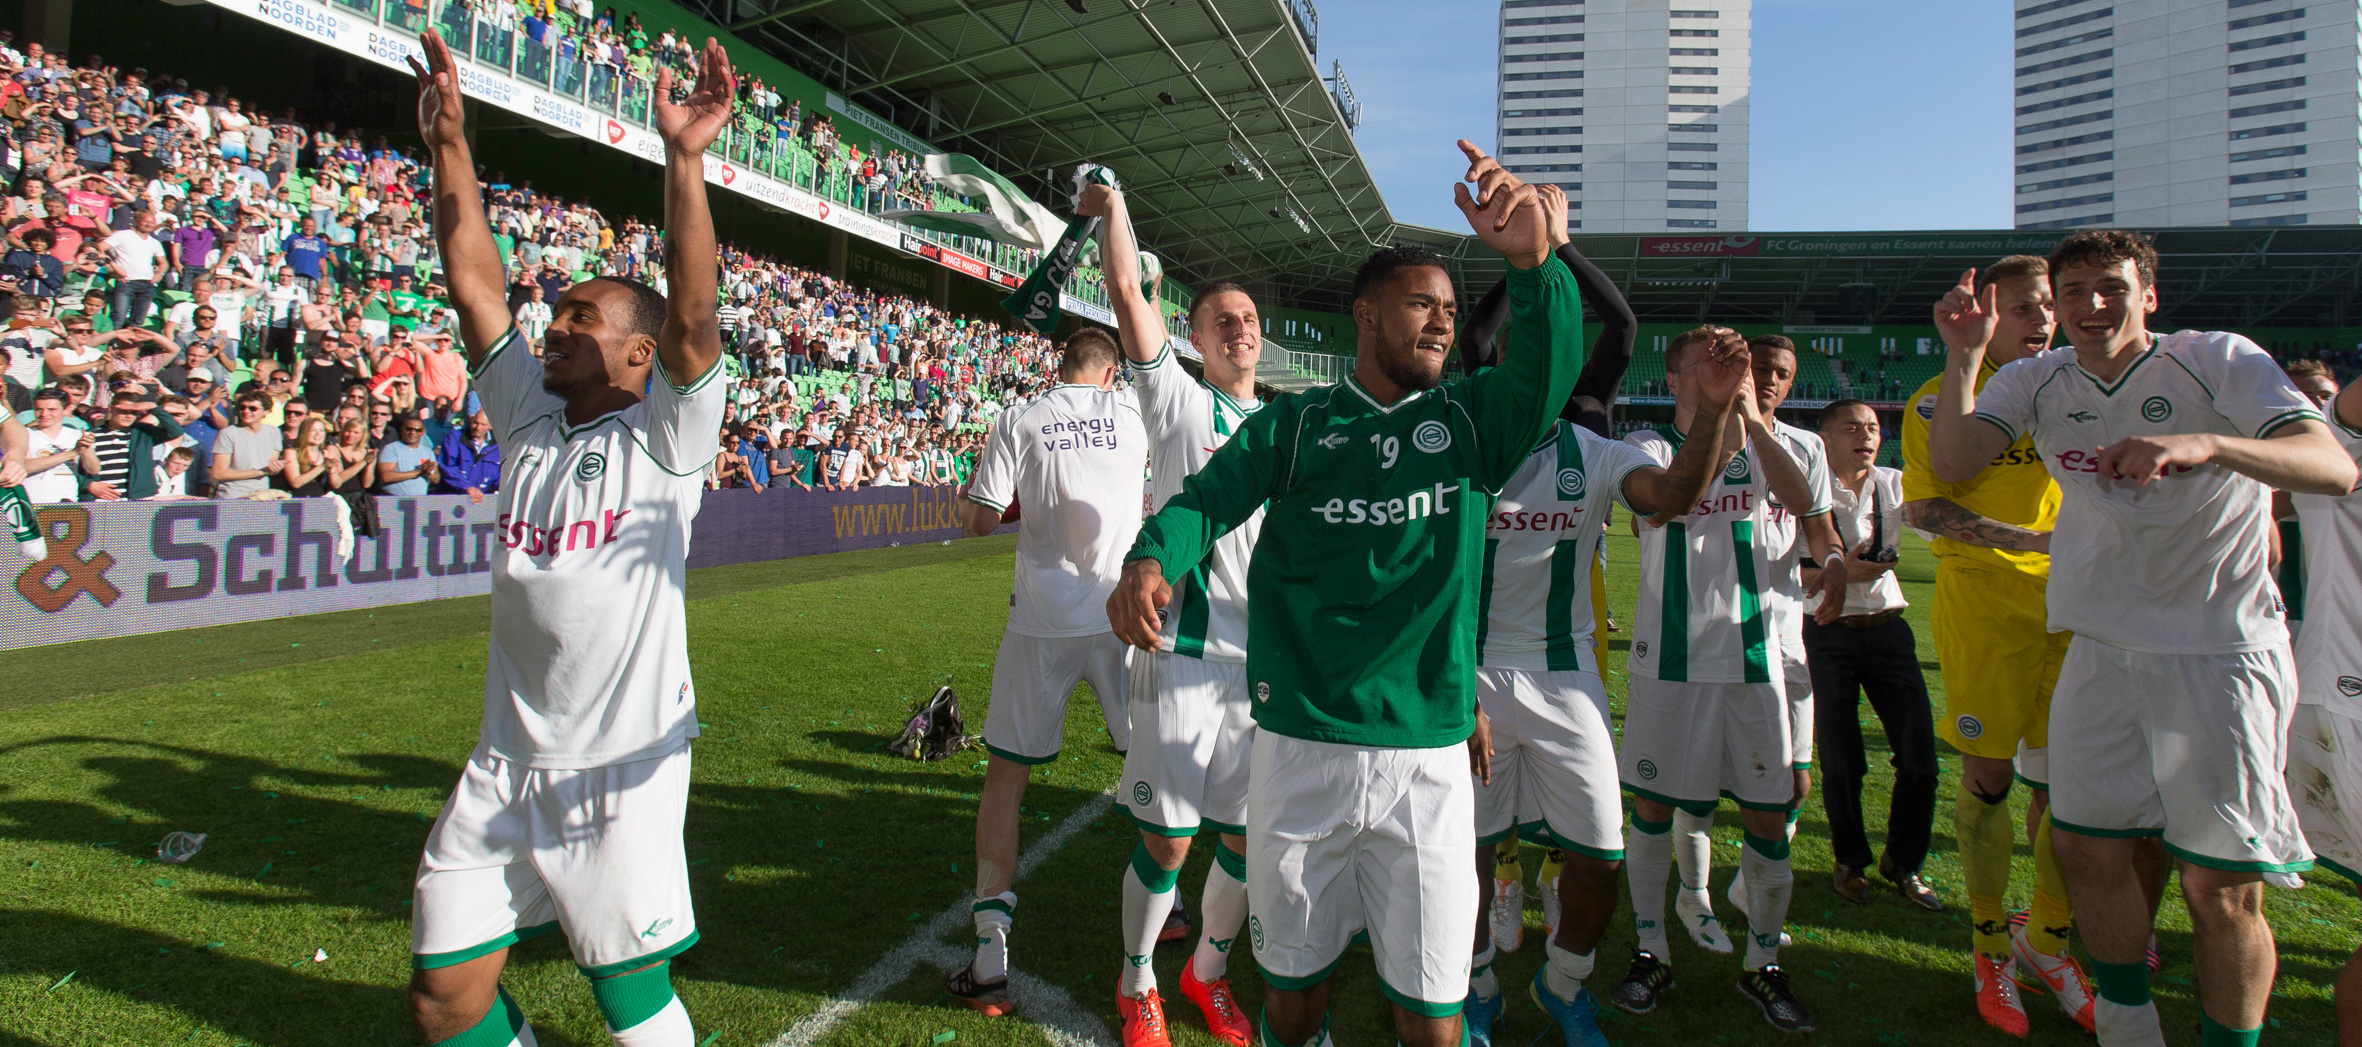 FC Groningen verzekerde zich afgelopen seizoen van Europees voetbal door AZ in de finale van de play-offs in twee wedstrijden te verslaan (0-0 en 3-0).